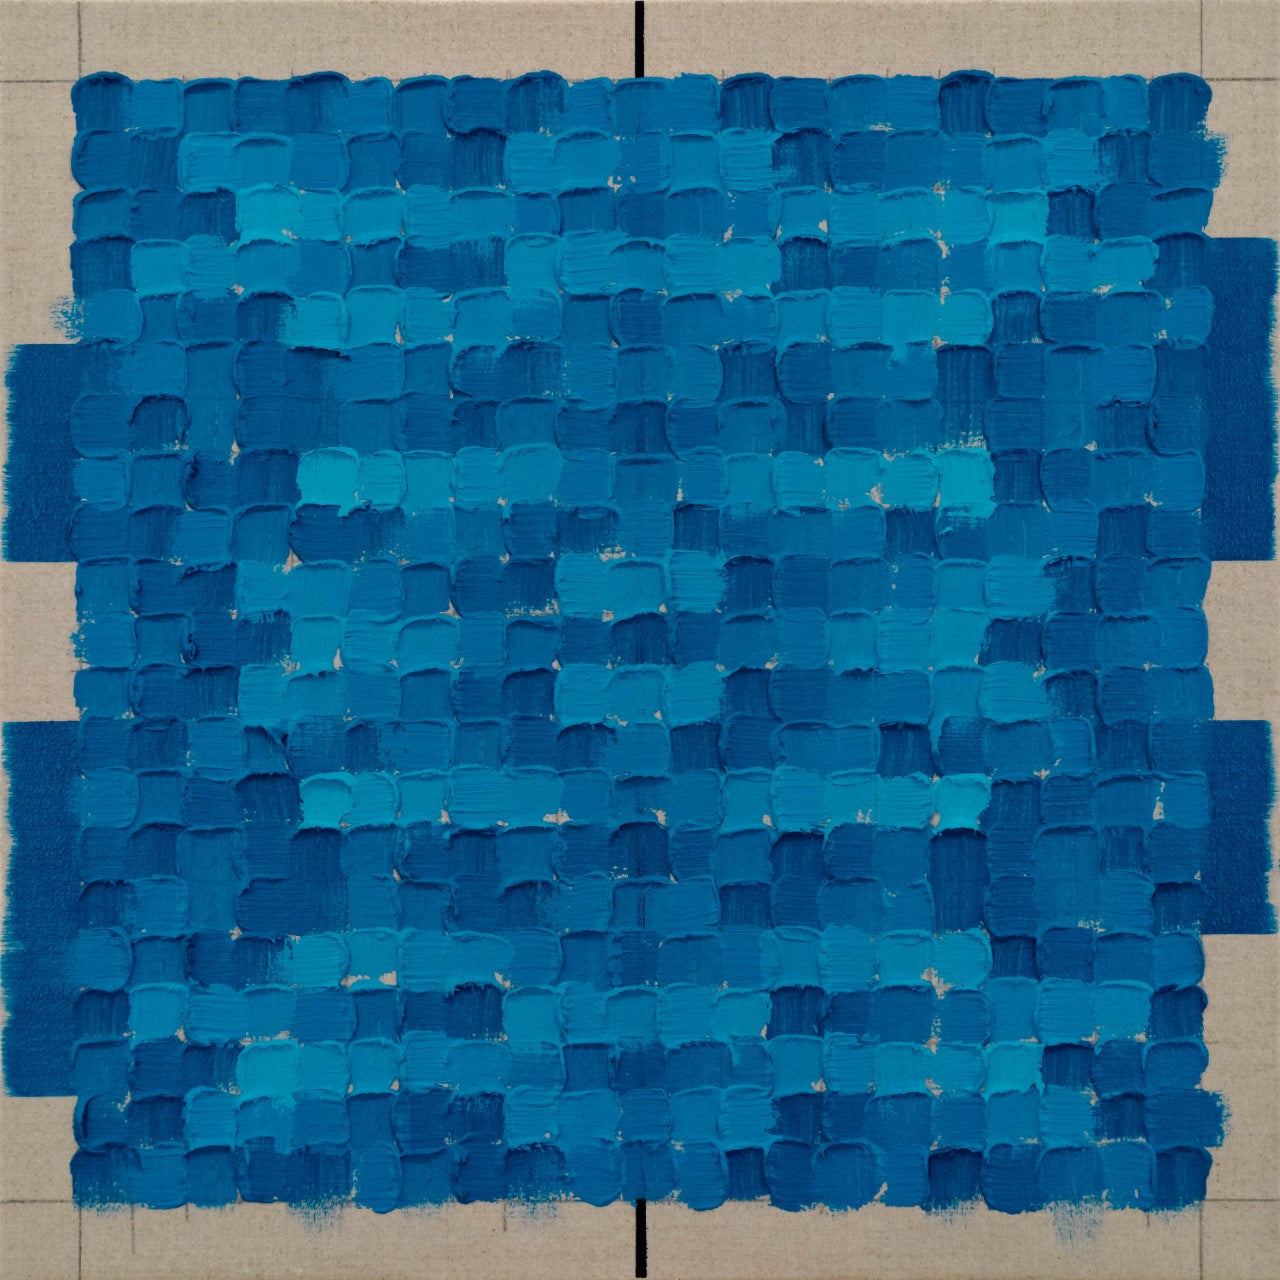 Randy Gibson, Quadrilateral Grid 11 (Cerulean Blue Deep), 2022